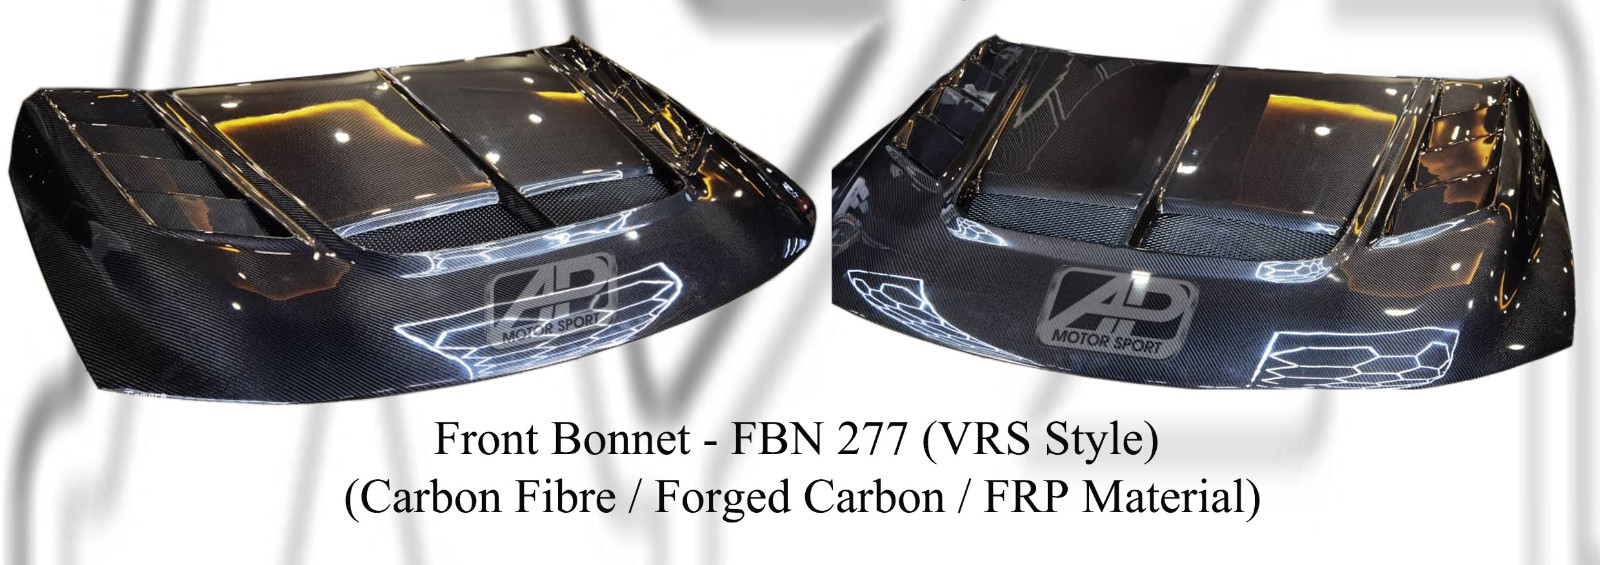 Proton Preve Front Bonnet (VRS Style) (Carbon Fibre / Forged